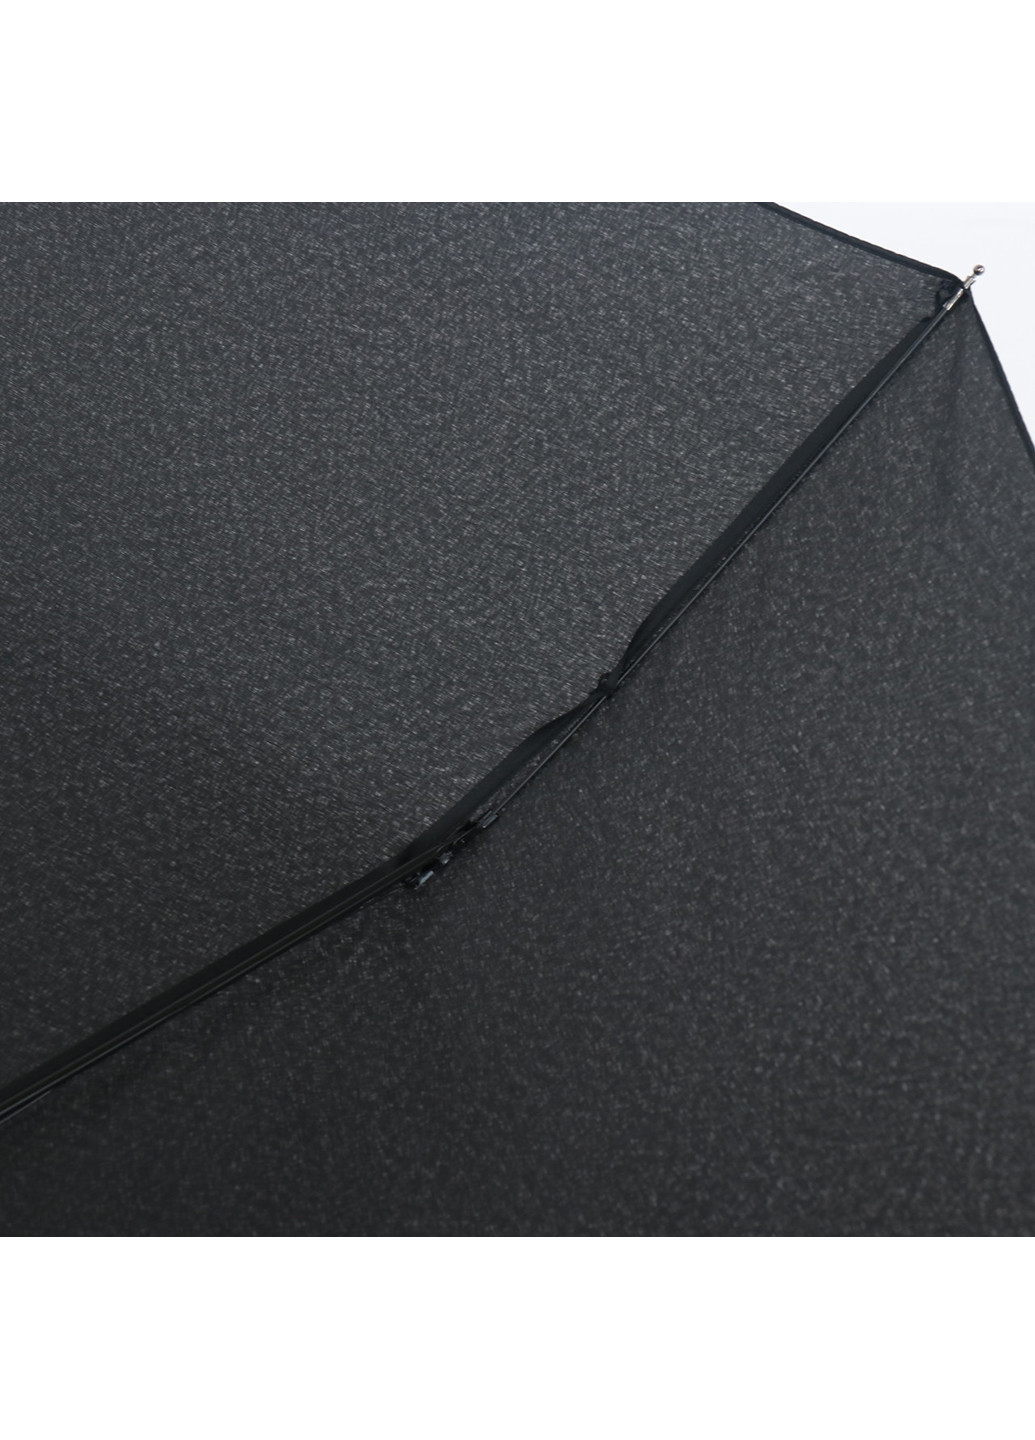 Мужской складной зонт автомат 99 см ArtRain (255710598)